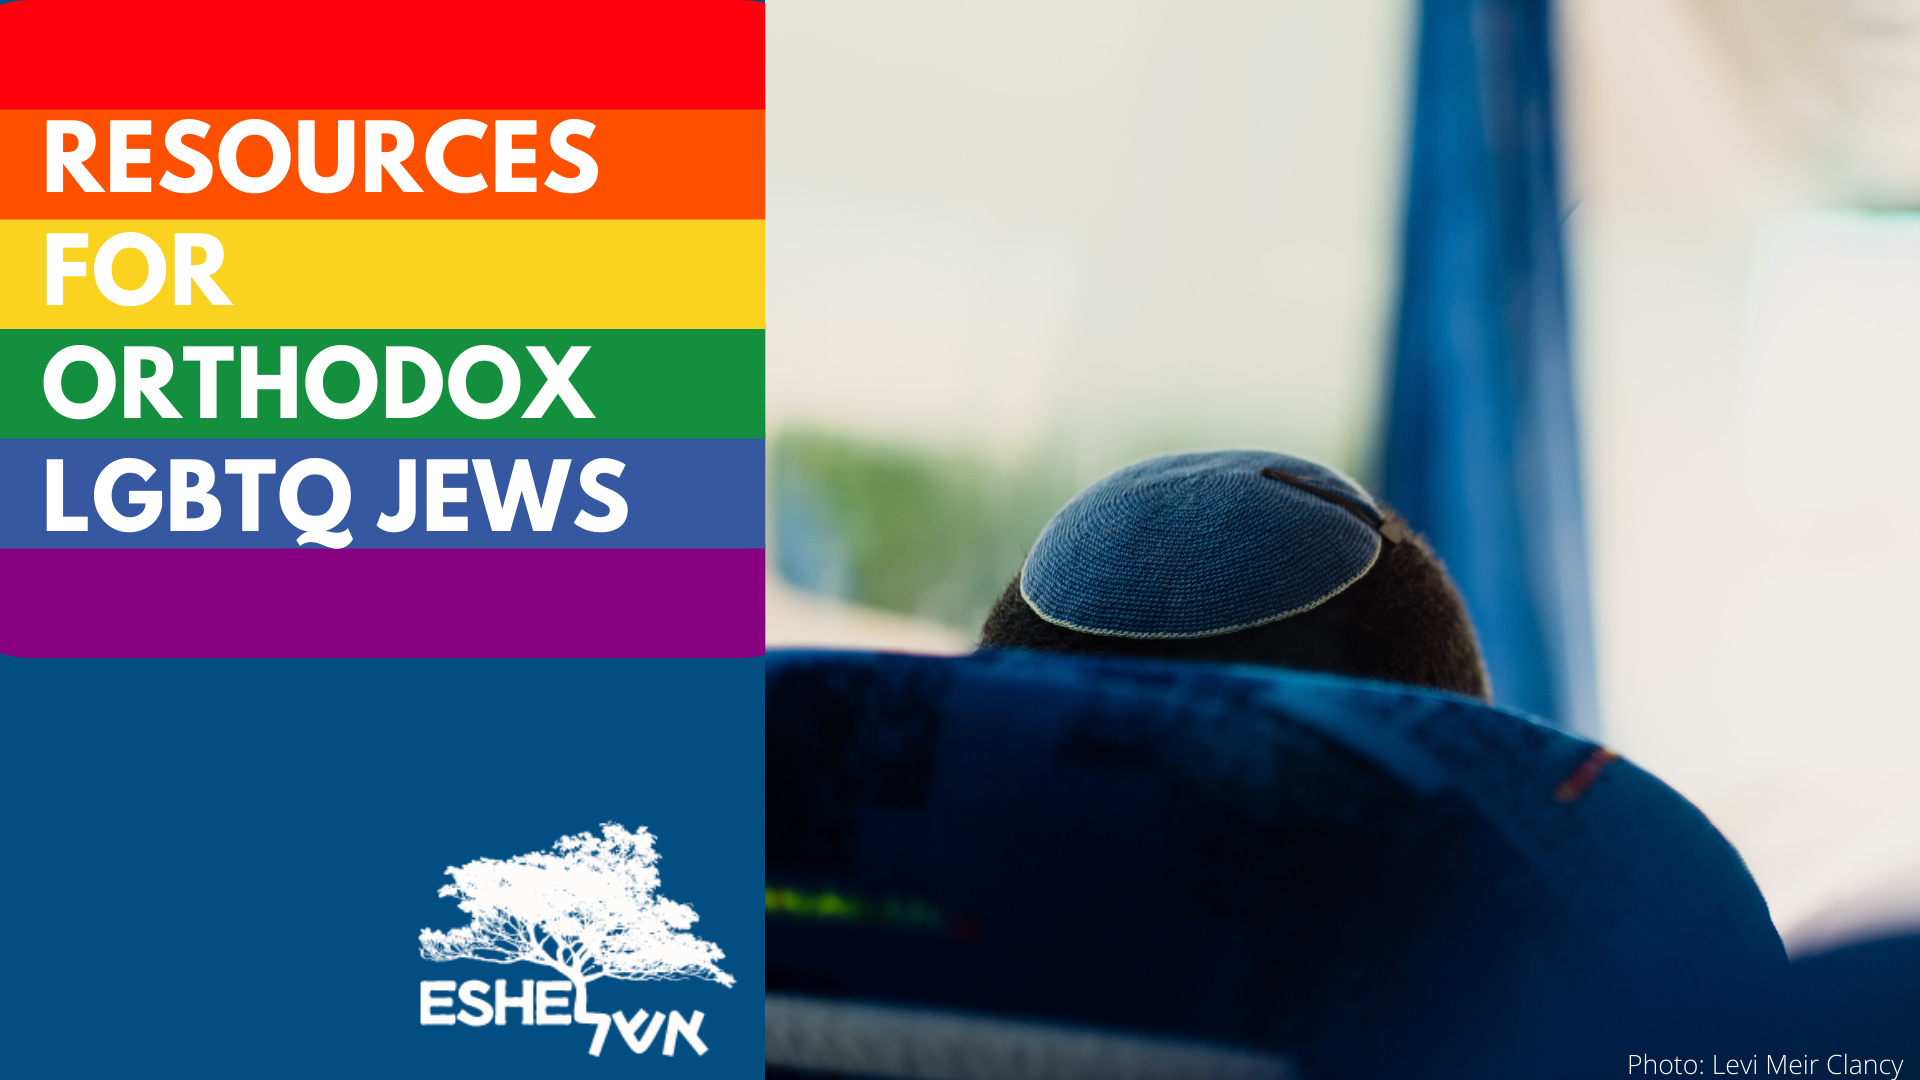 Resources for Orthodox LGBTQ Jews